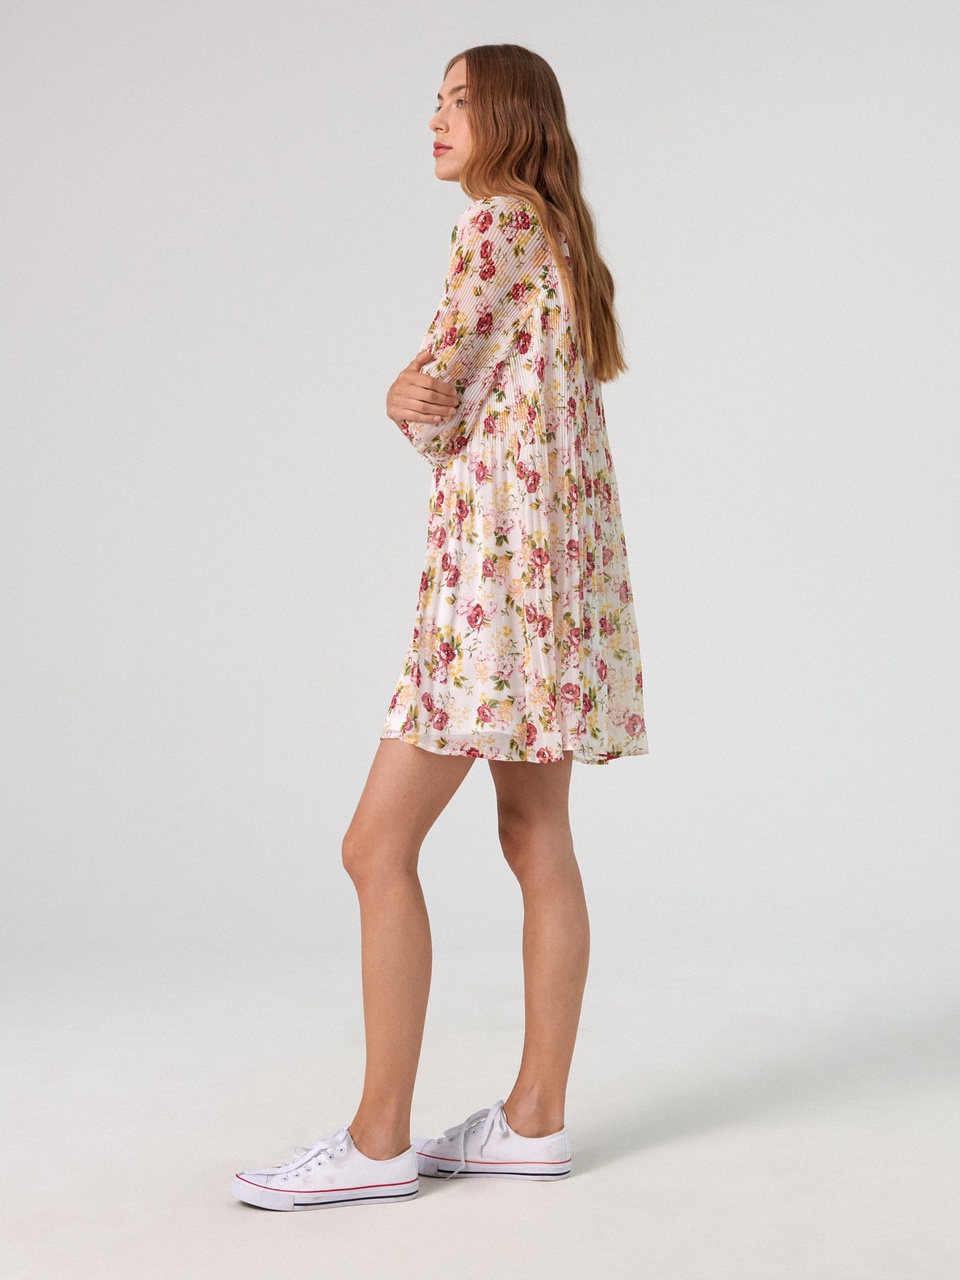 Платье с цветочным узором - 799 ₽, заказать онлайн.